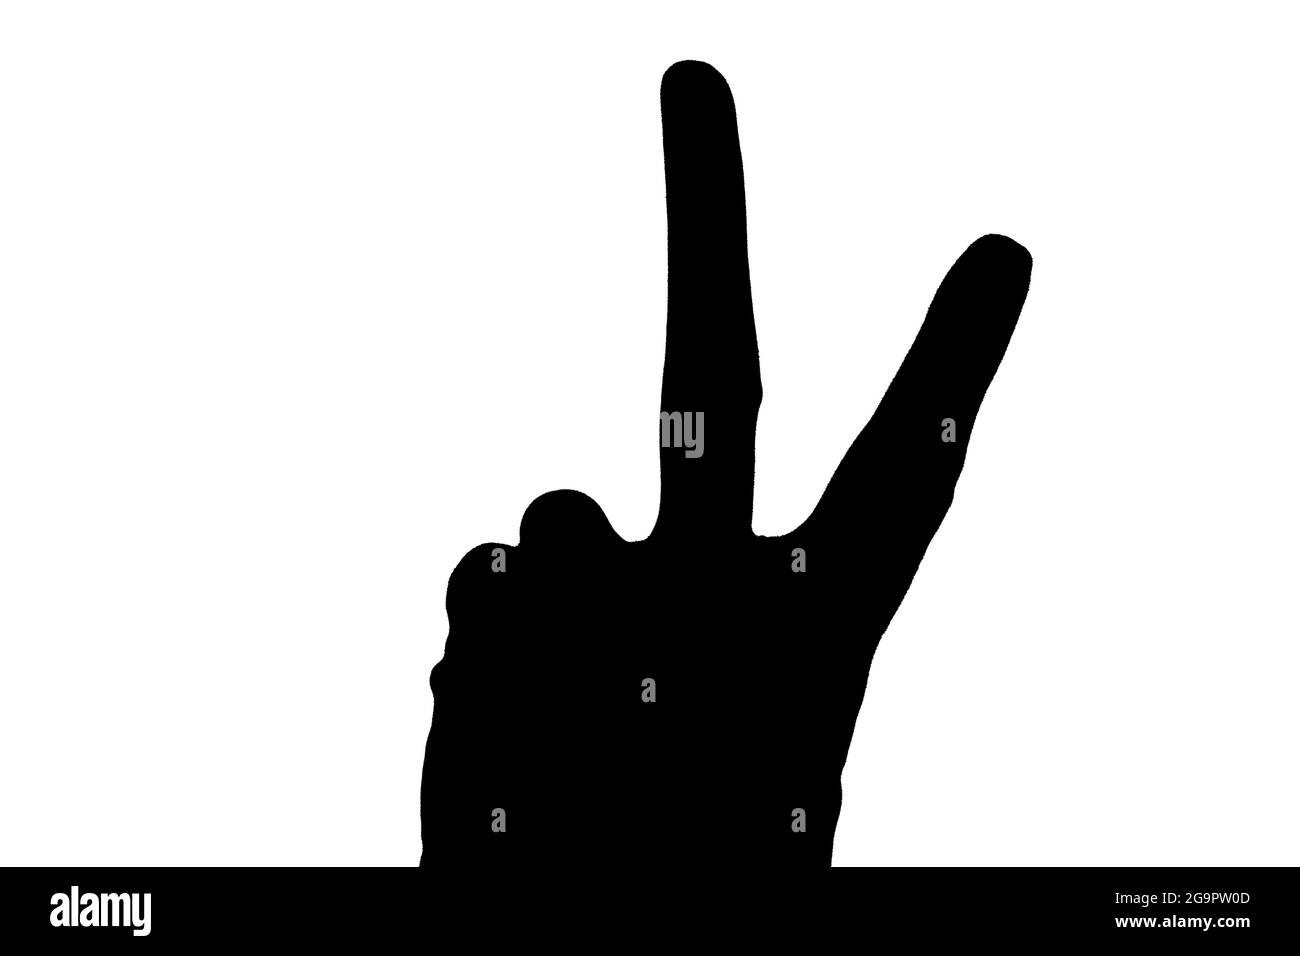 Silhouette ou ombre noire d'une main montrant deux doigts ou un geste de victoire, de succès ou un signe de playboy isolé sur fond blanc, fra verticale Banque D'Images